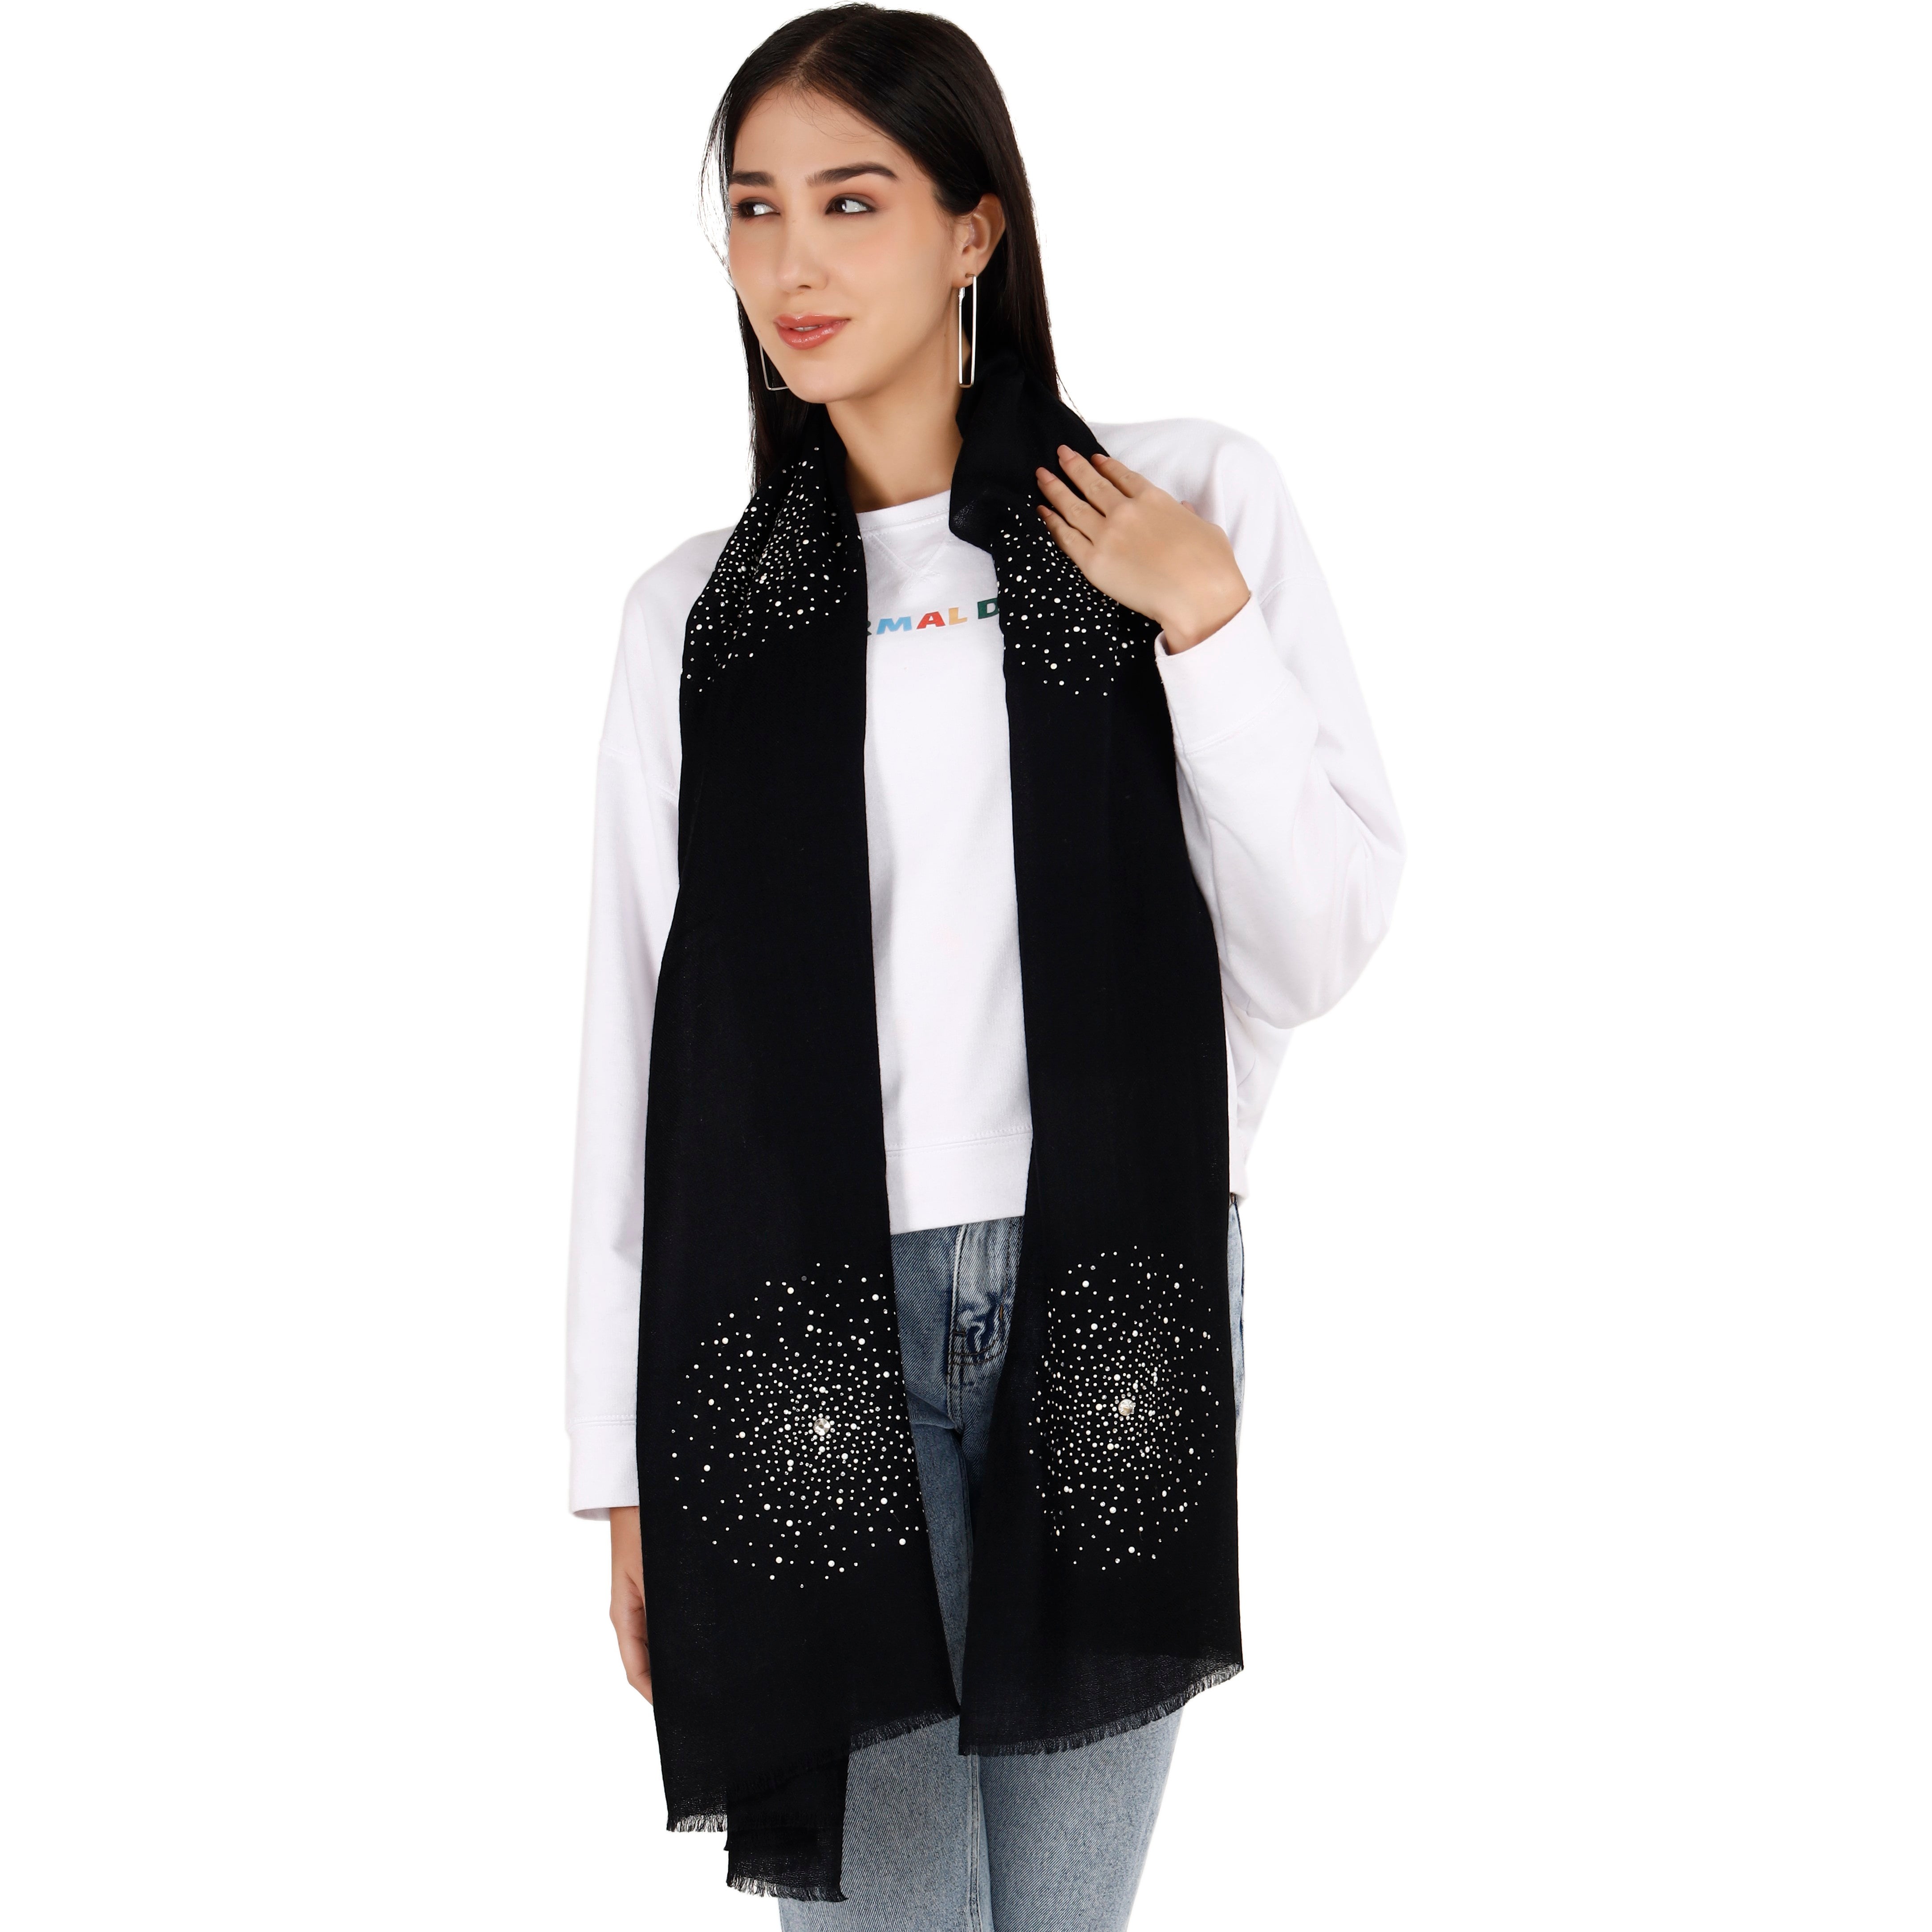 Black Large Pashmina Shawl with Crystal Beads Burst Design